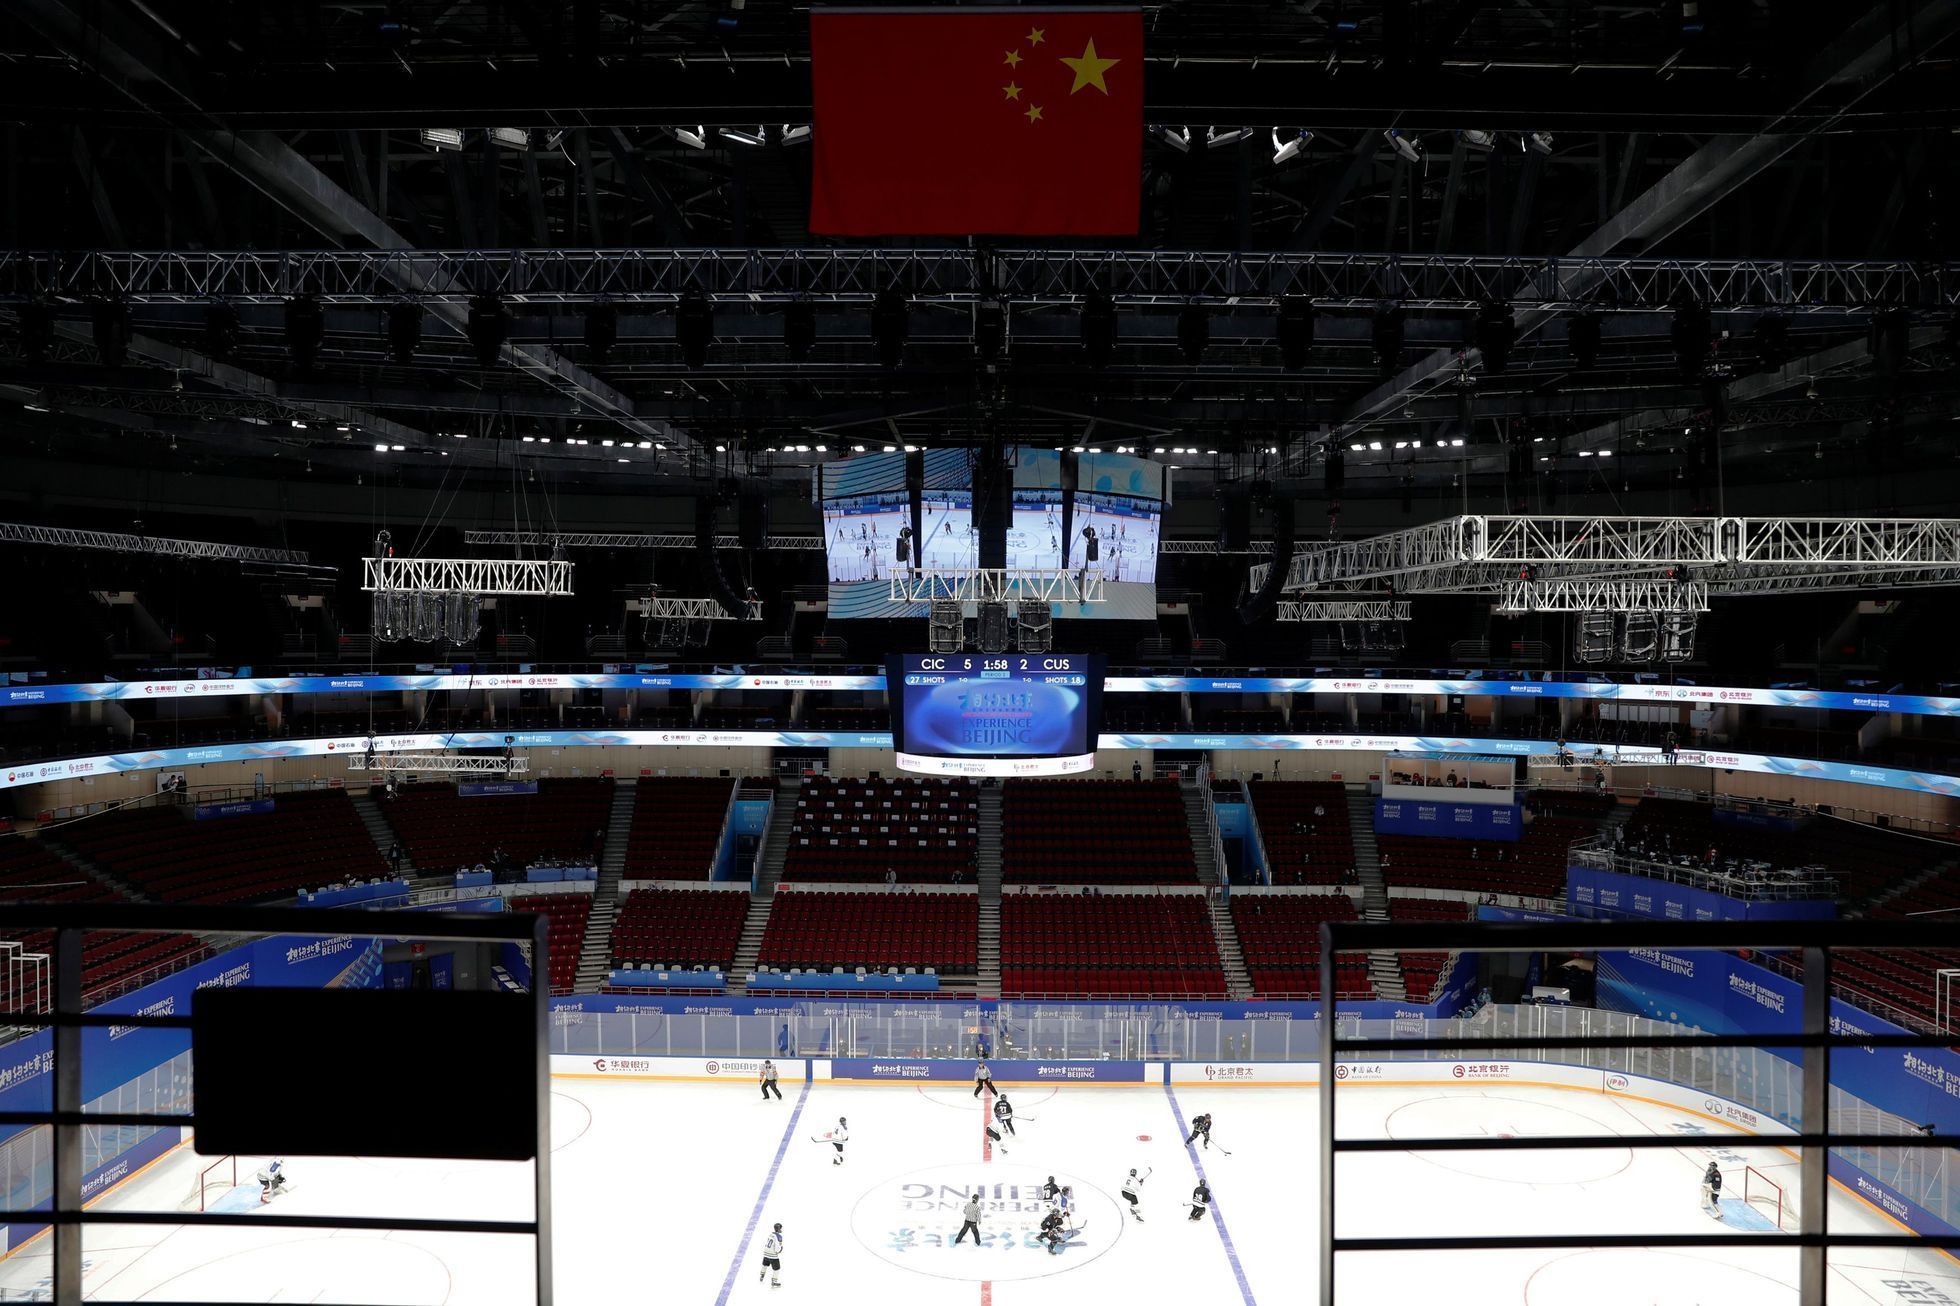 Stadiony pro olympiádu v Pekingu 2022: Wukesong (lední hokej)